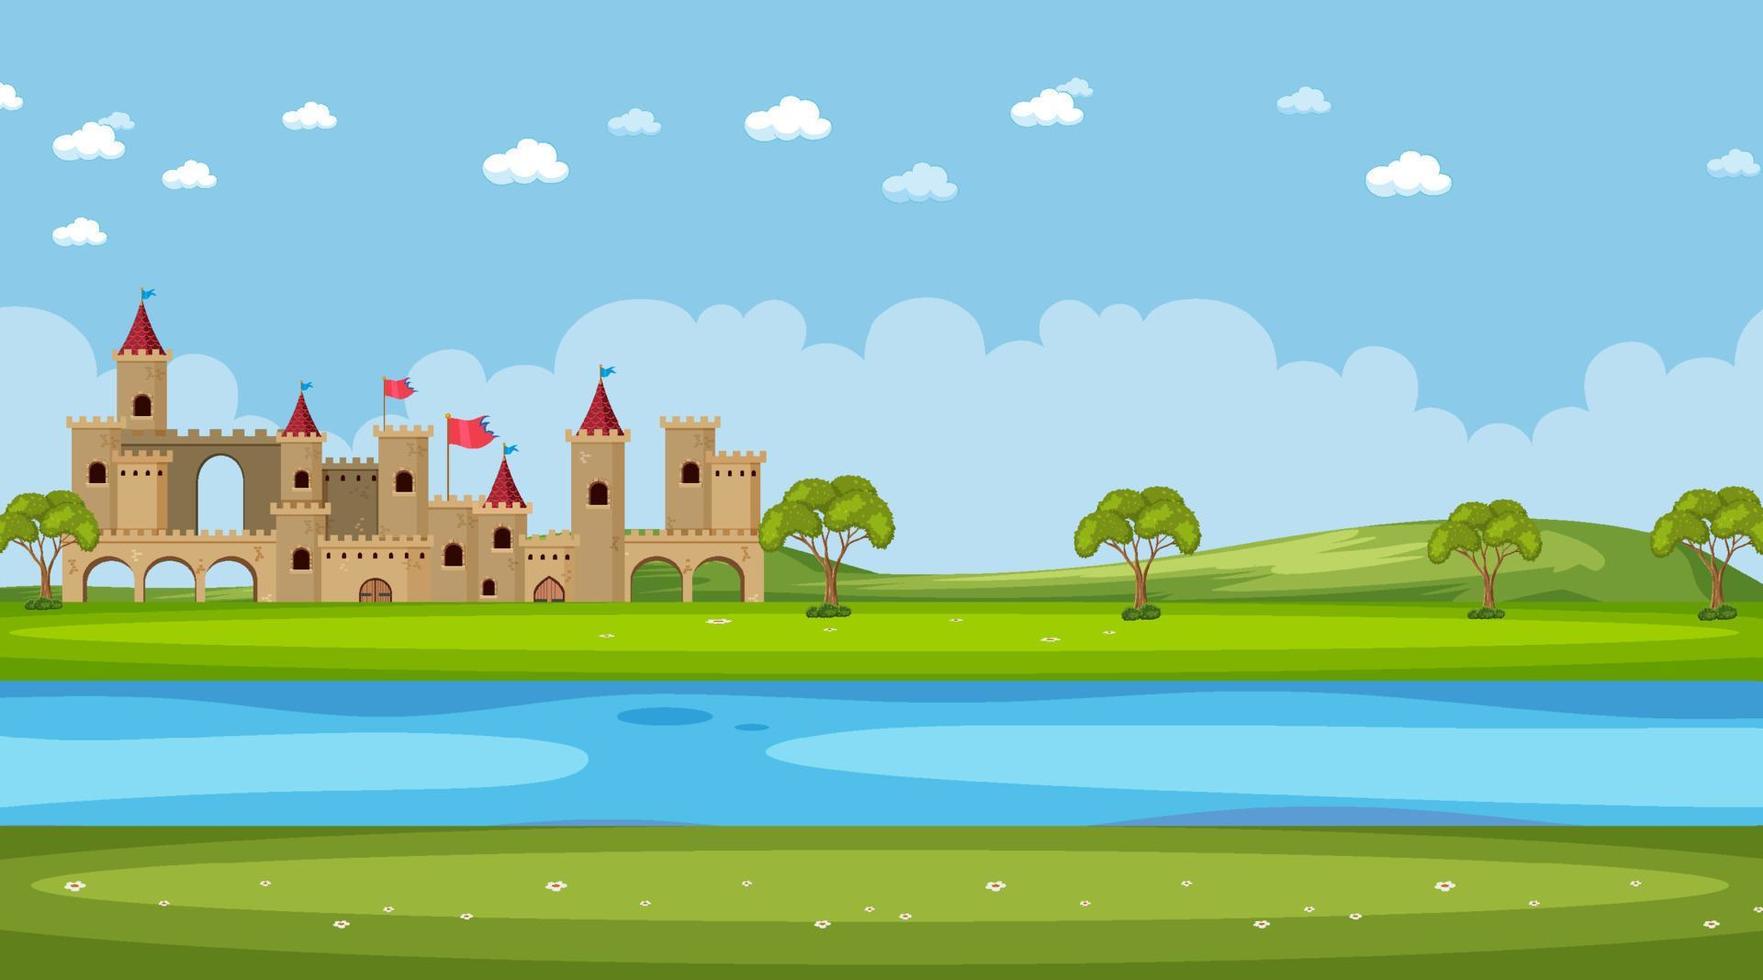 cena da cidade medieval em estilo cartoon vetor